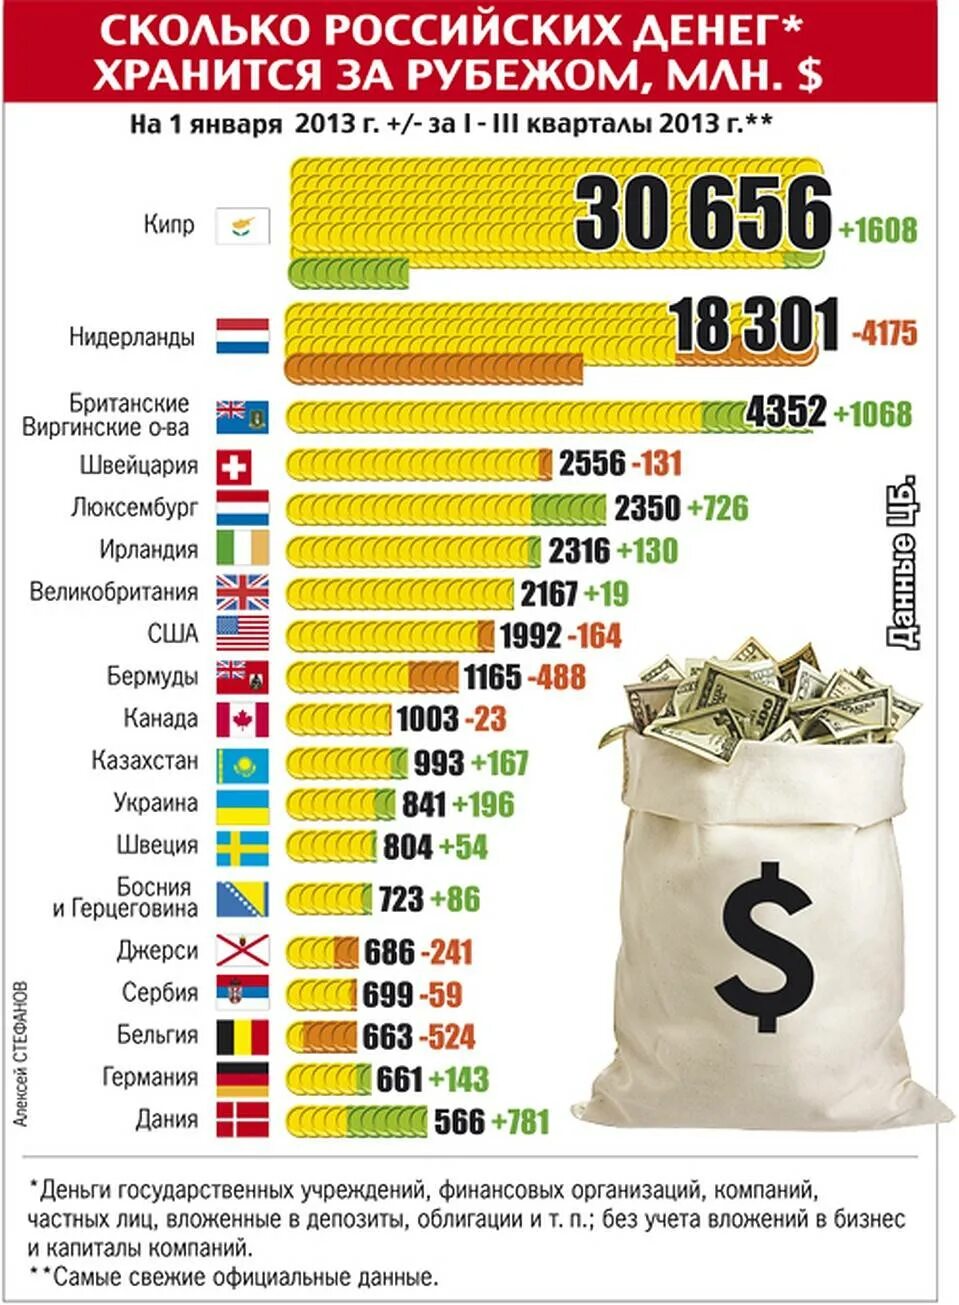 Сколько всего денег в мире. Сколькоьденег в России. Количество денег в странах. Сколько денег в России.